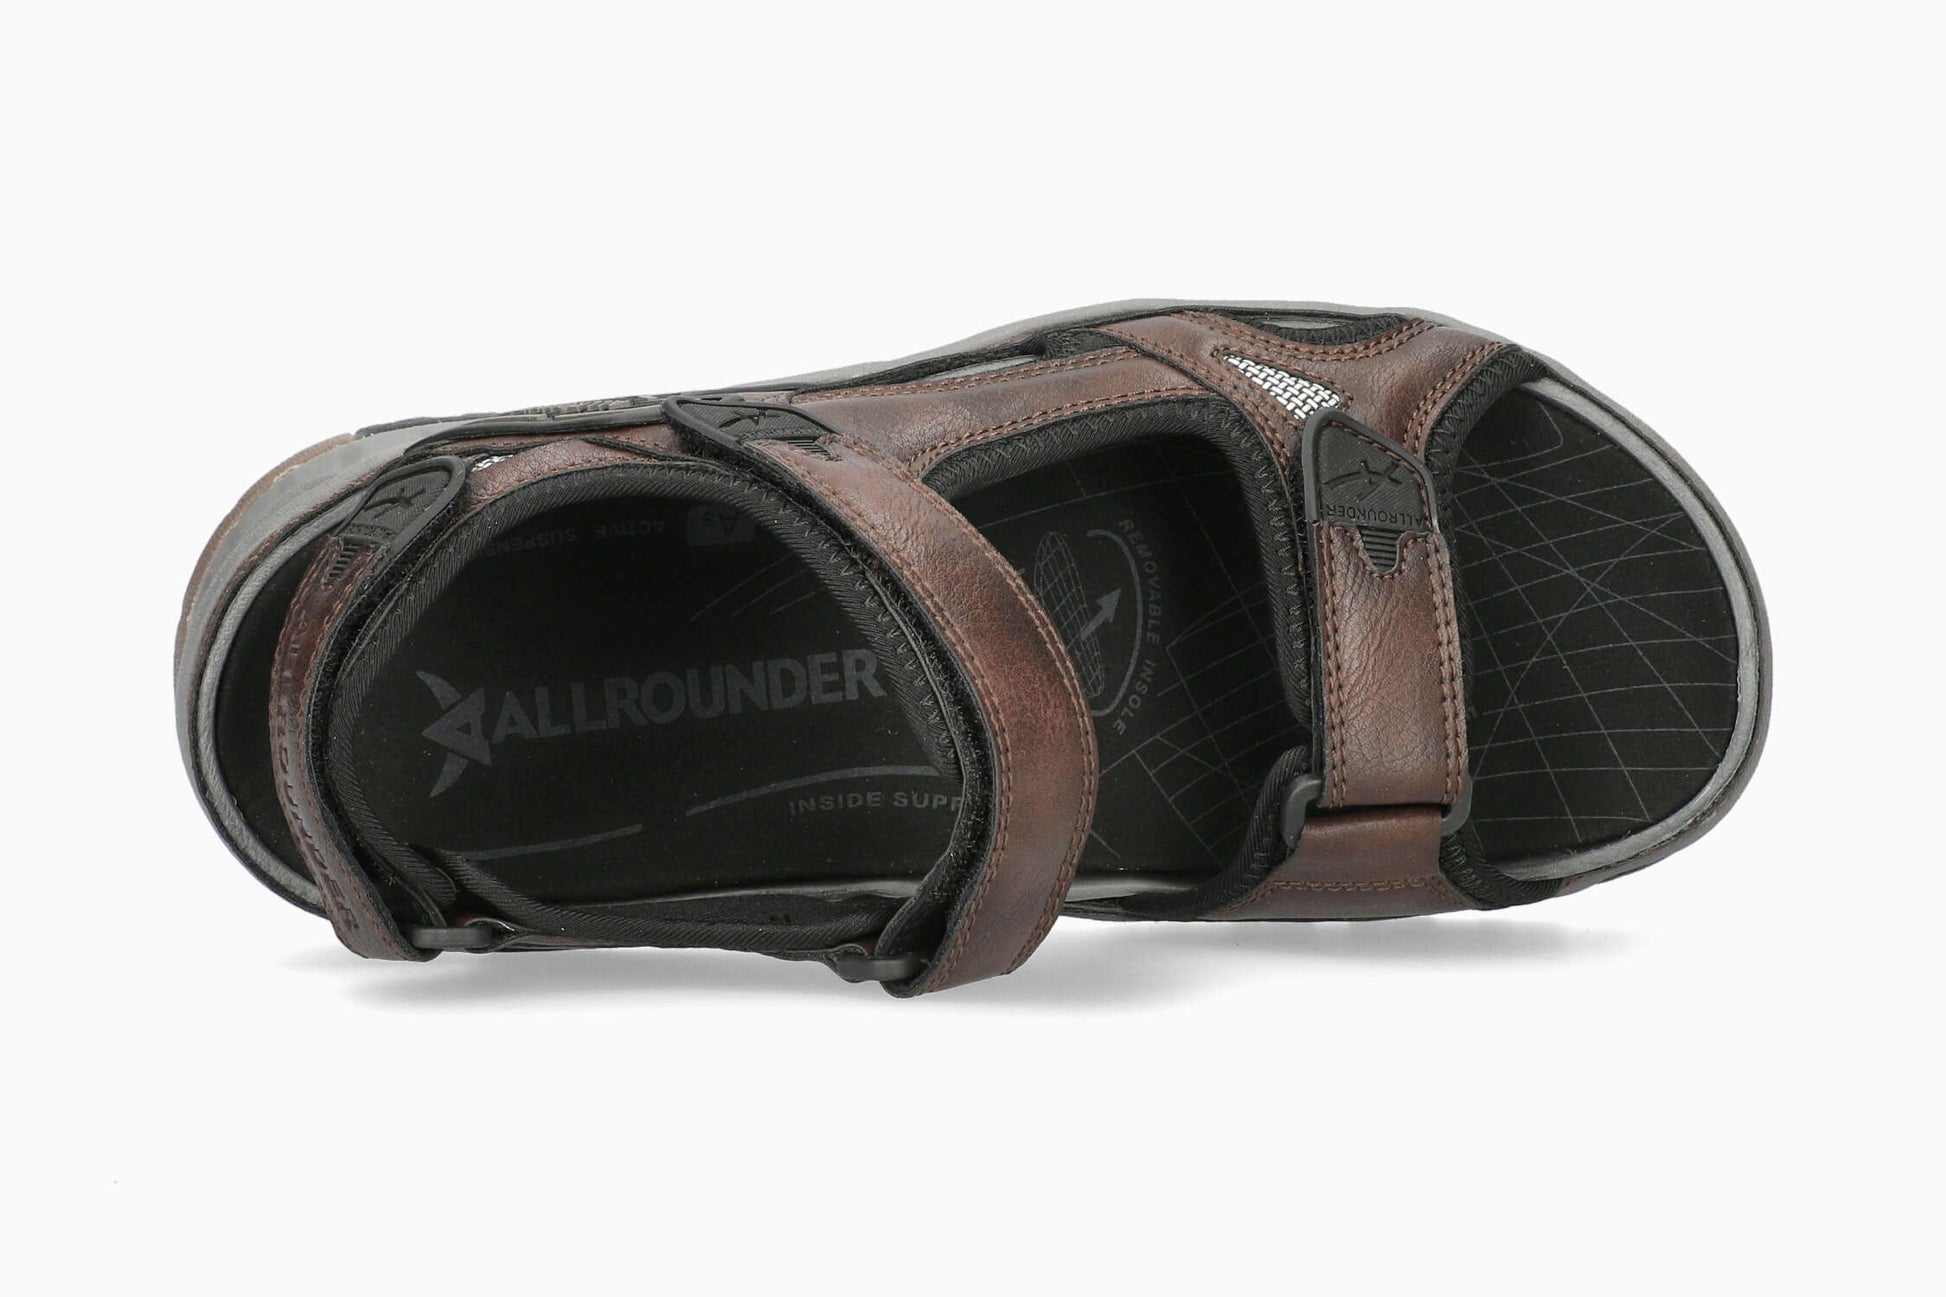 Allrounder Honduras Dark Oat Men's Sandal Top